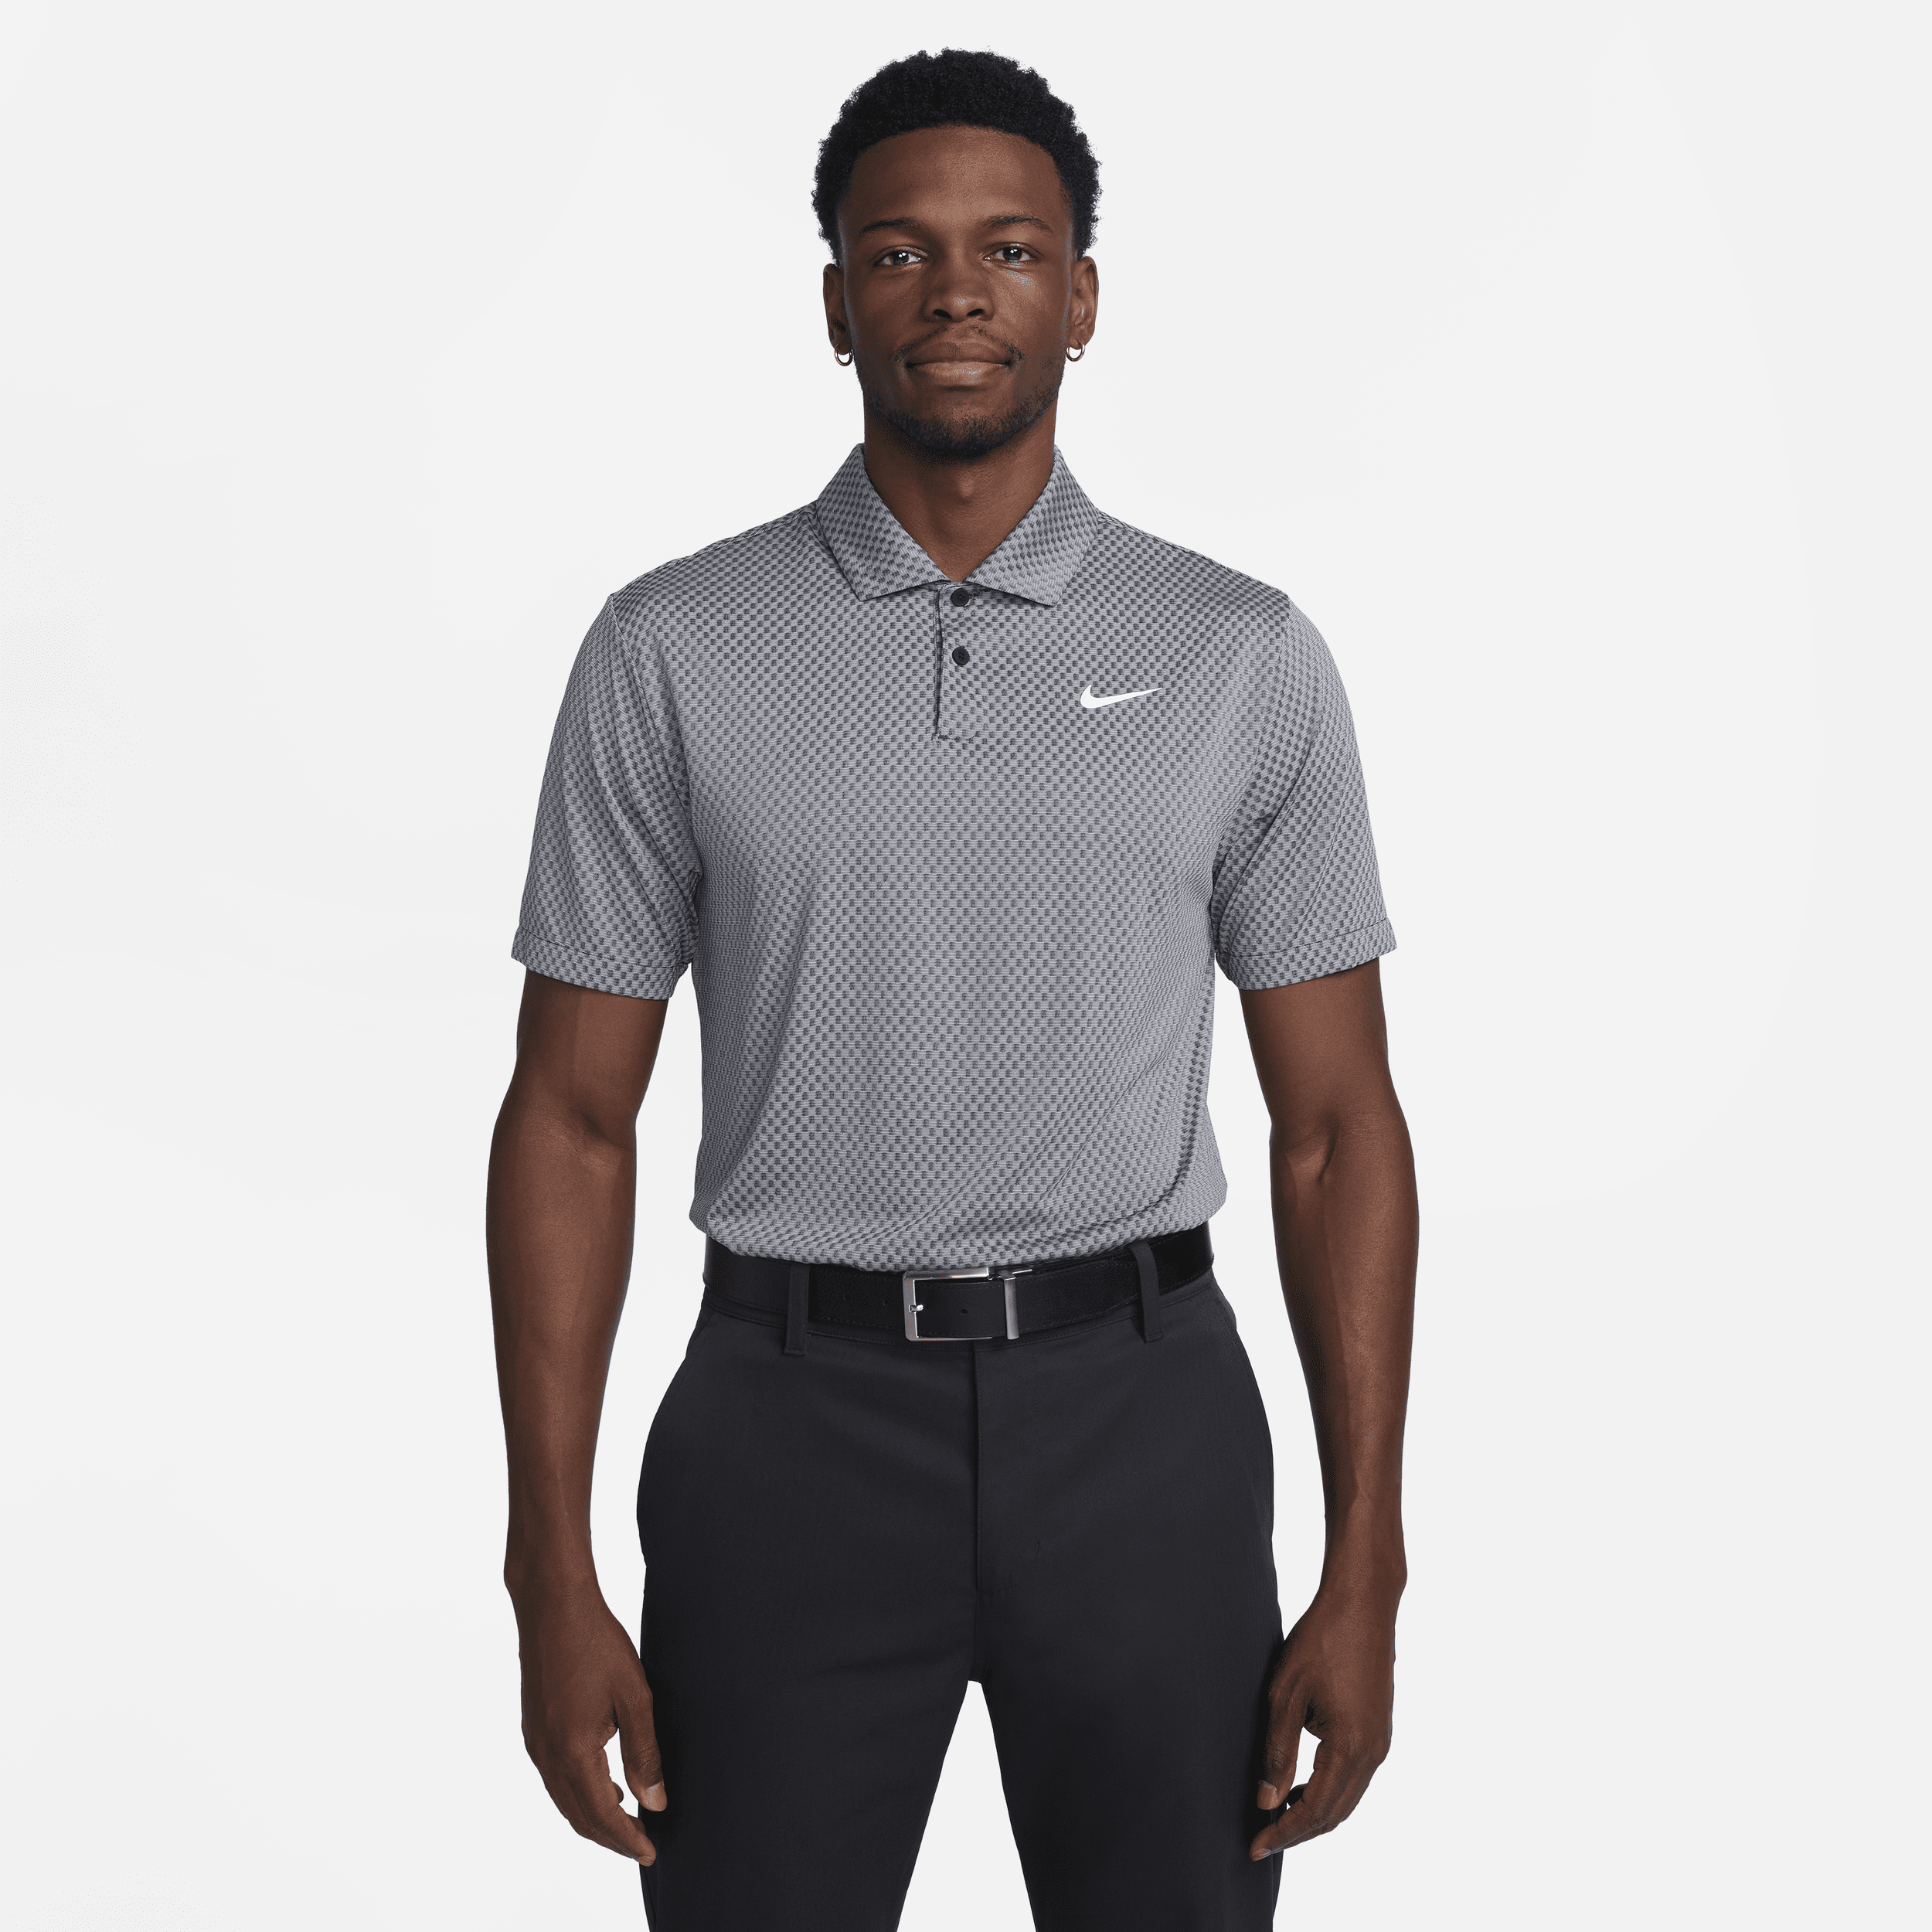 Nike Tour Dri-FIT-golfpolotrøje til mænd - sort